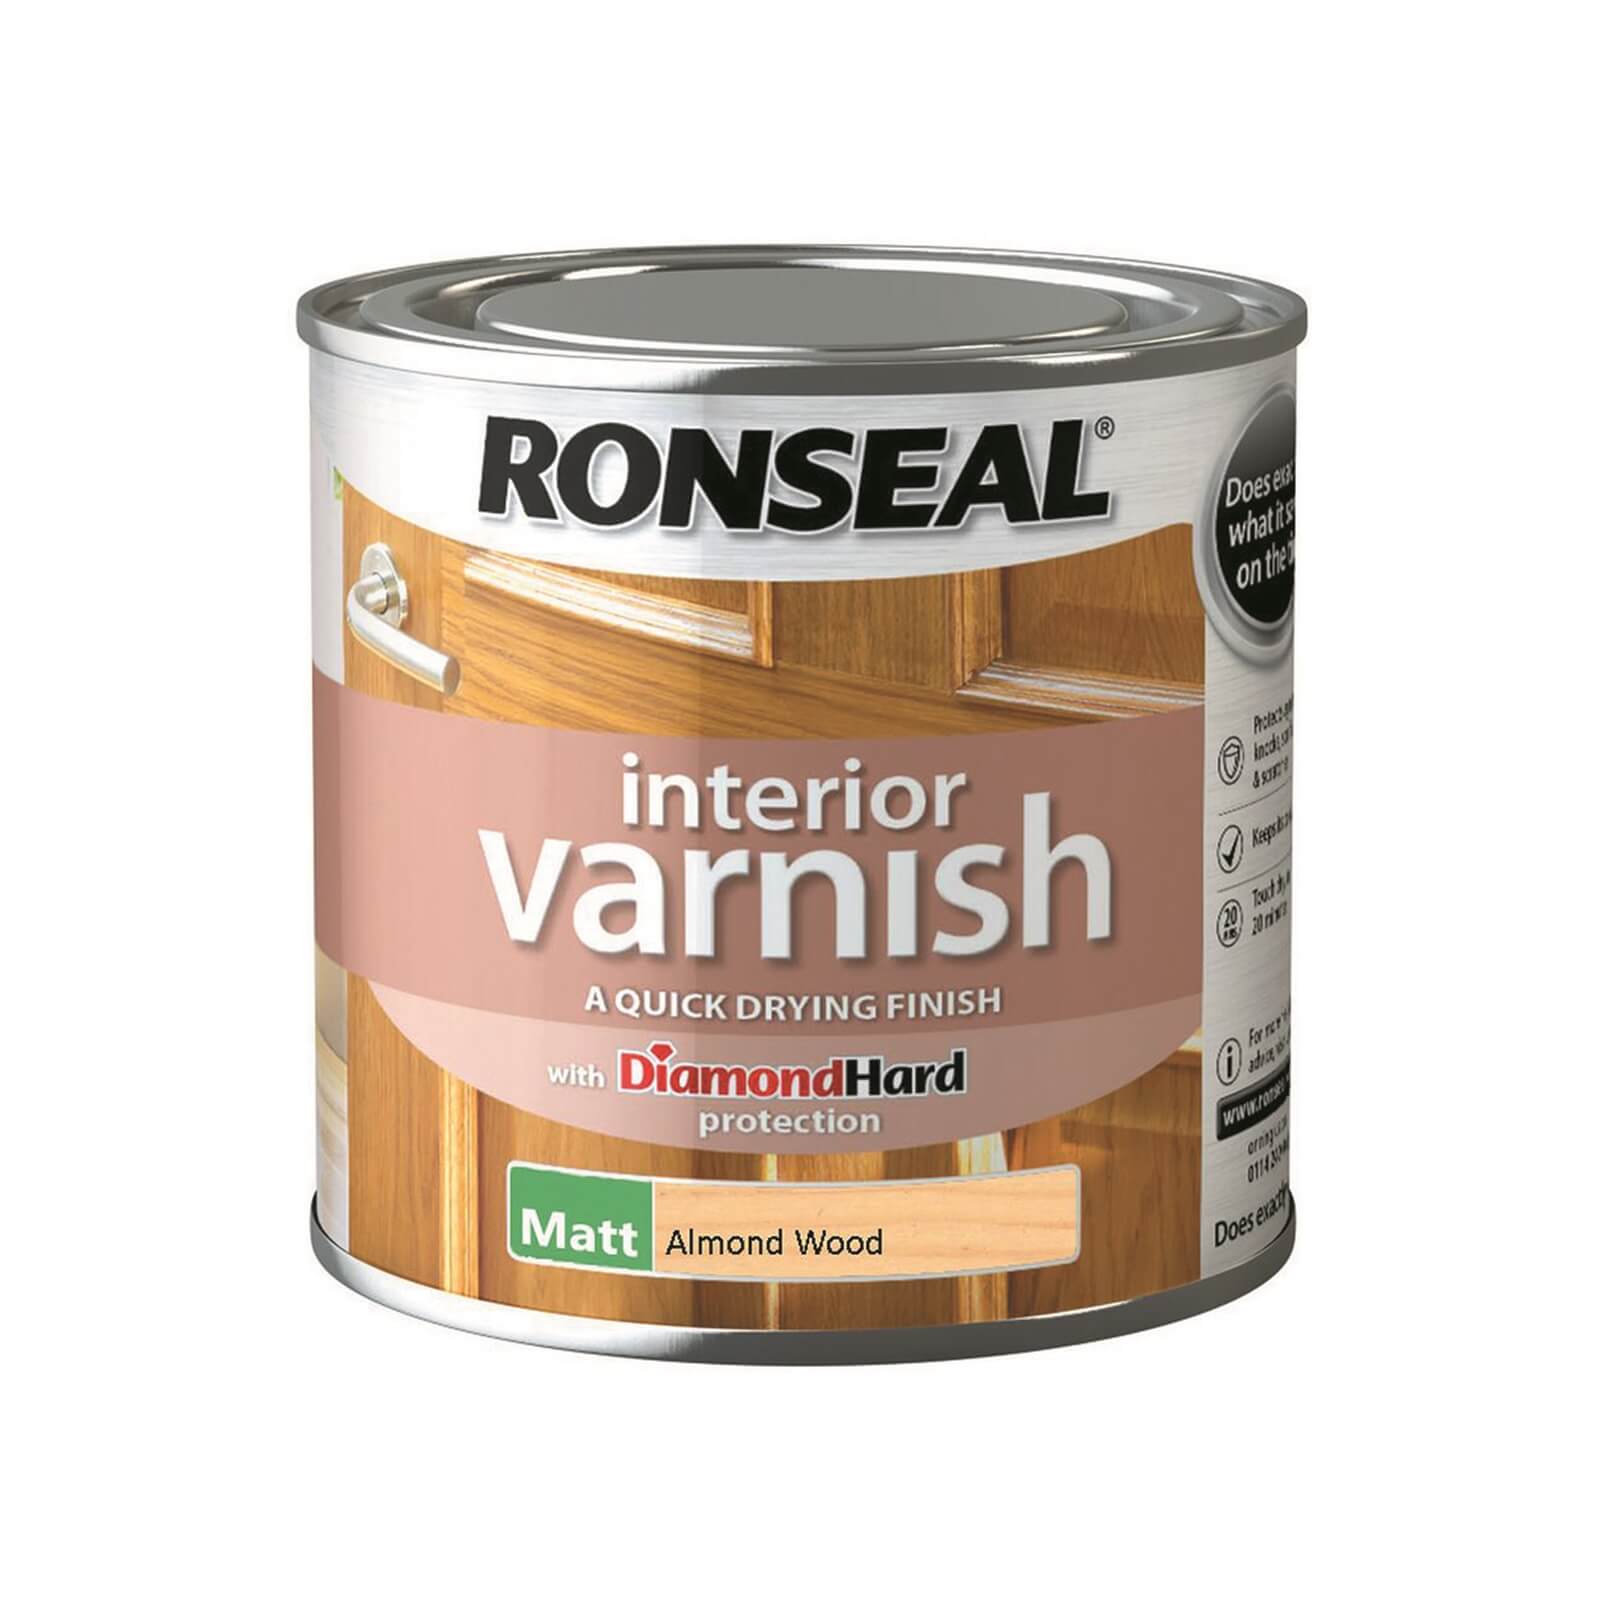 Photo of Ronseal Interior Varnish Matt Almond Wood - 250ml